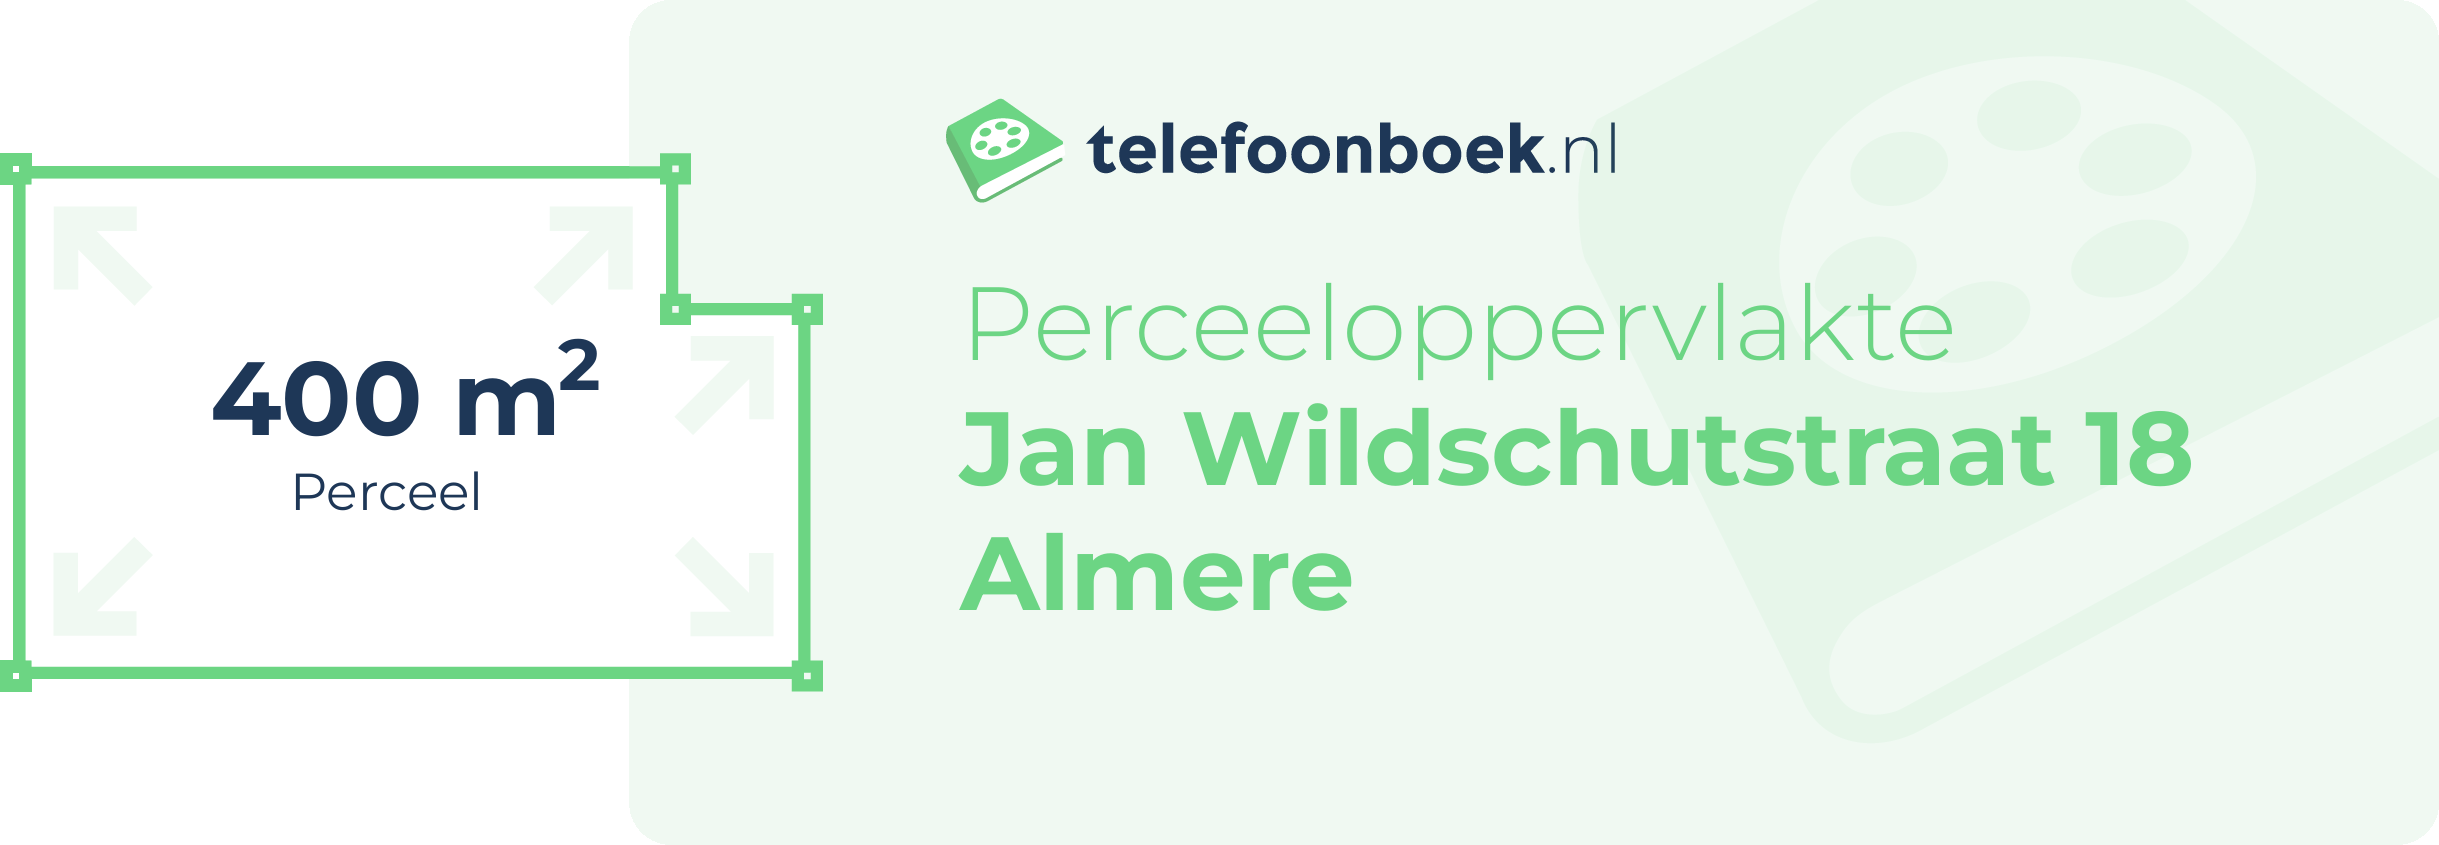 Perceeloppervlakte Jan Wildschutstraat 18 Almere